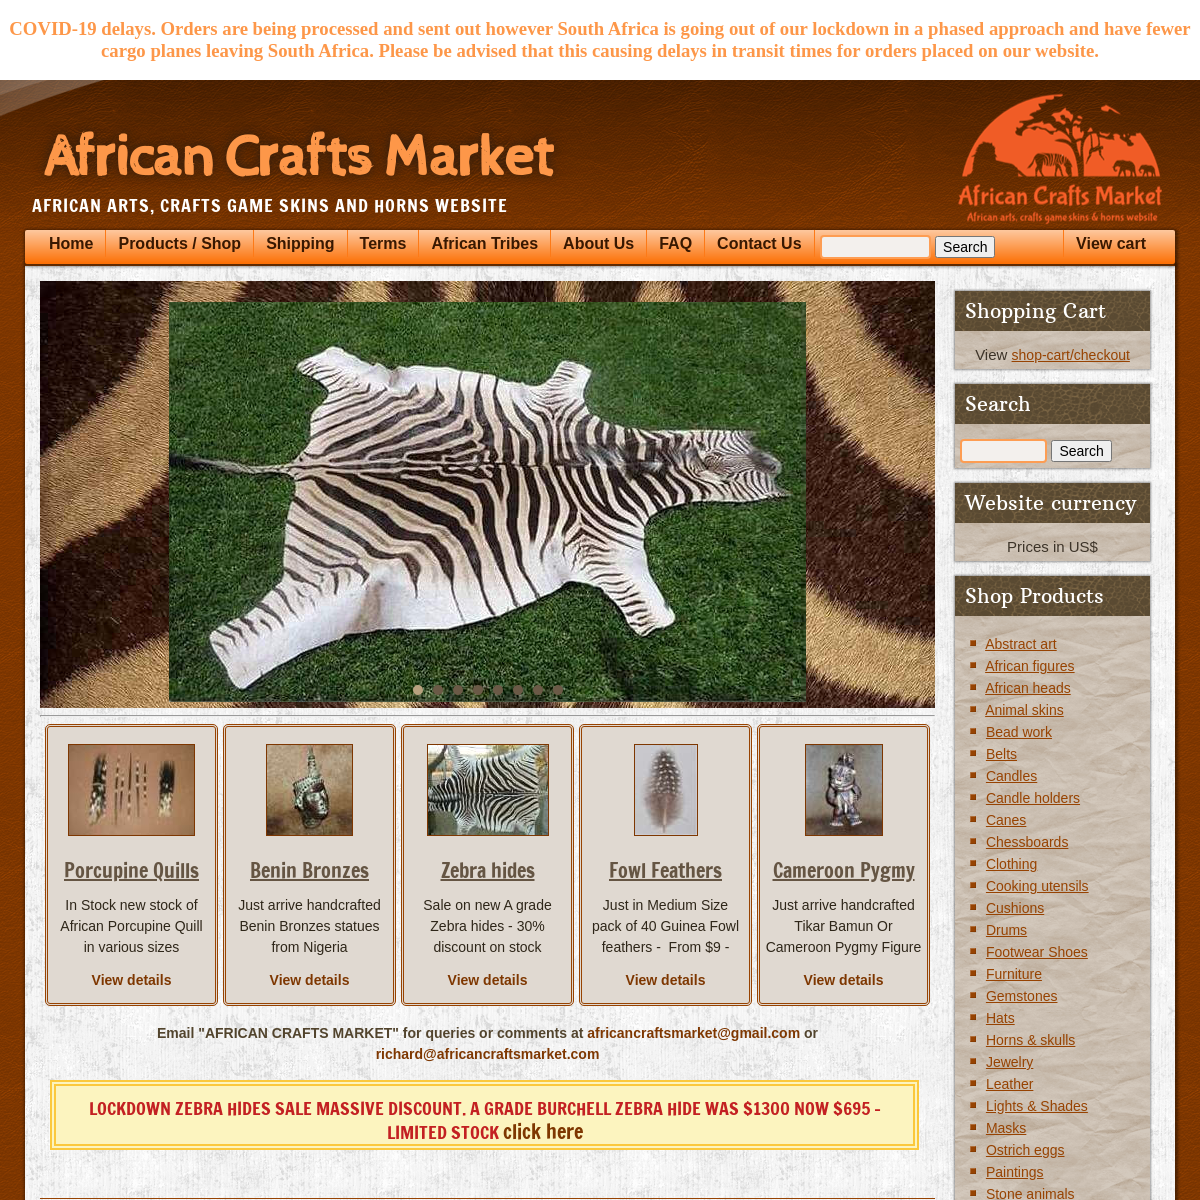 A complete backup of africancraftsmarket.com